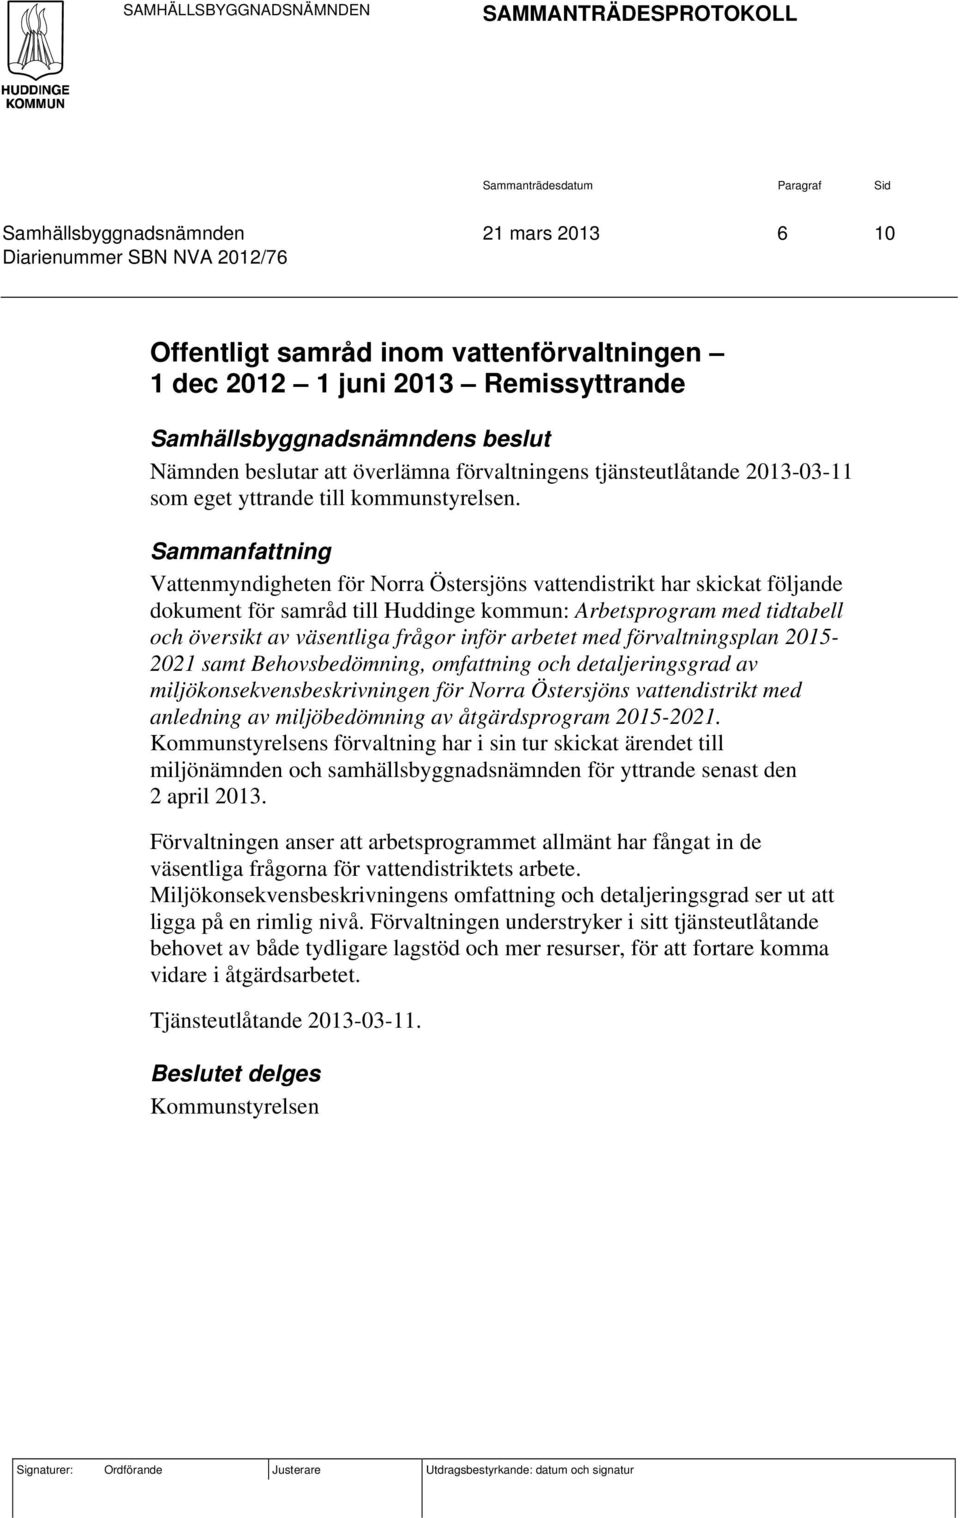 Sammanfattning Vattenmyndigheten för Norra Östersjöns vattendistrikt har skickat följande dokument för samråd till Huddinge kommun: Arbetsprogram med tidtabell och översikt av väsentliga frågor inför